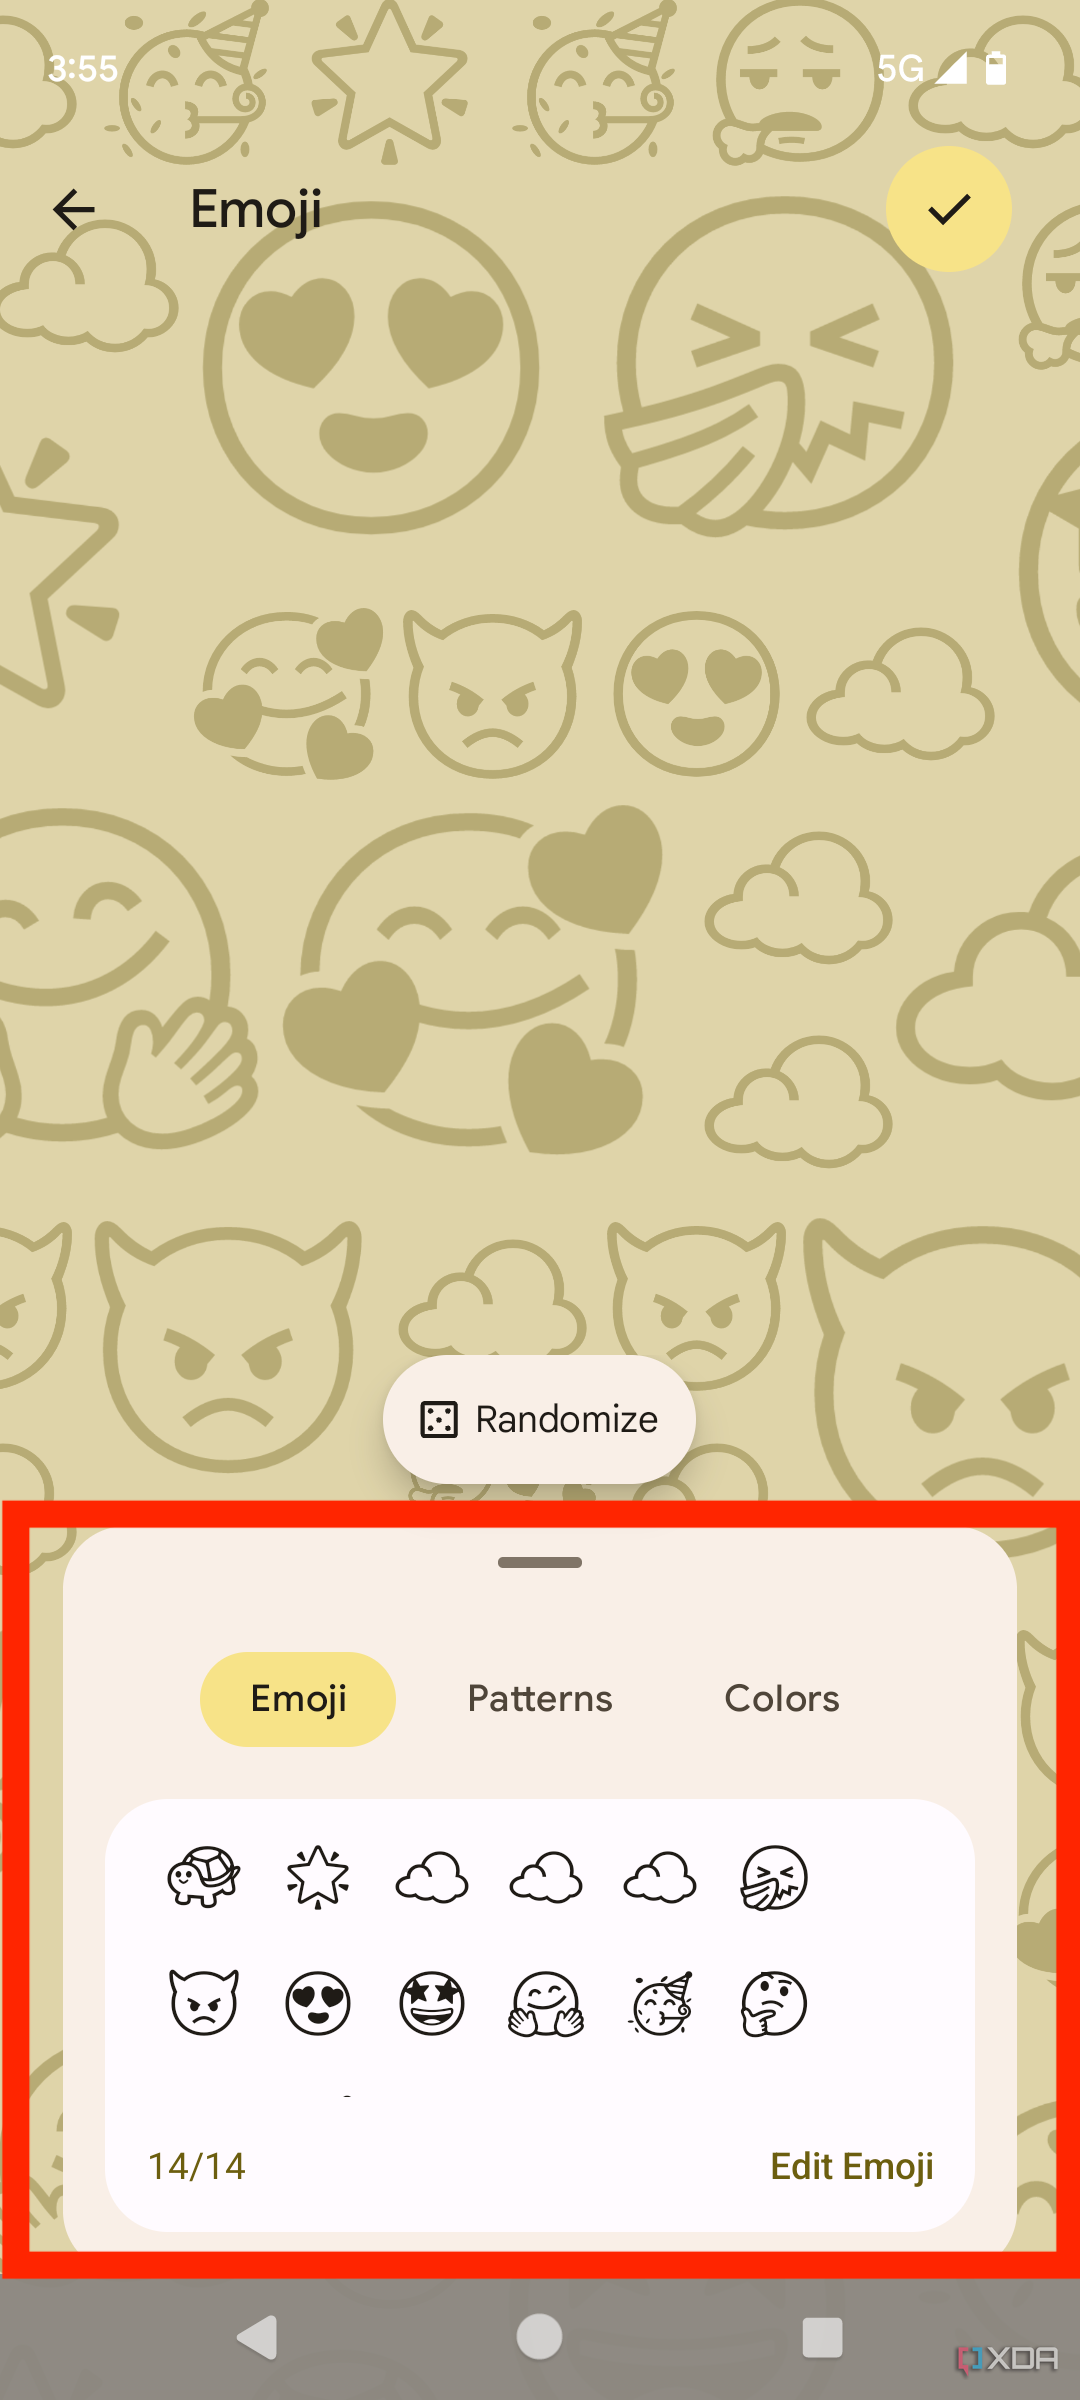 Скриншот, сделанный на Pixel 7, показывающий средство выбора Emoji в Emoji Workshop.